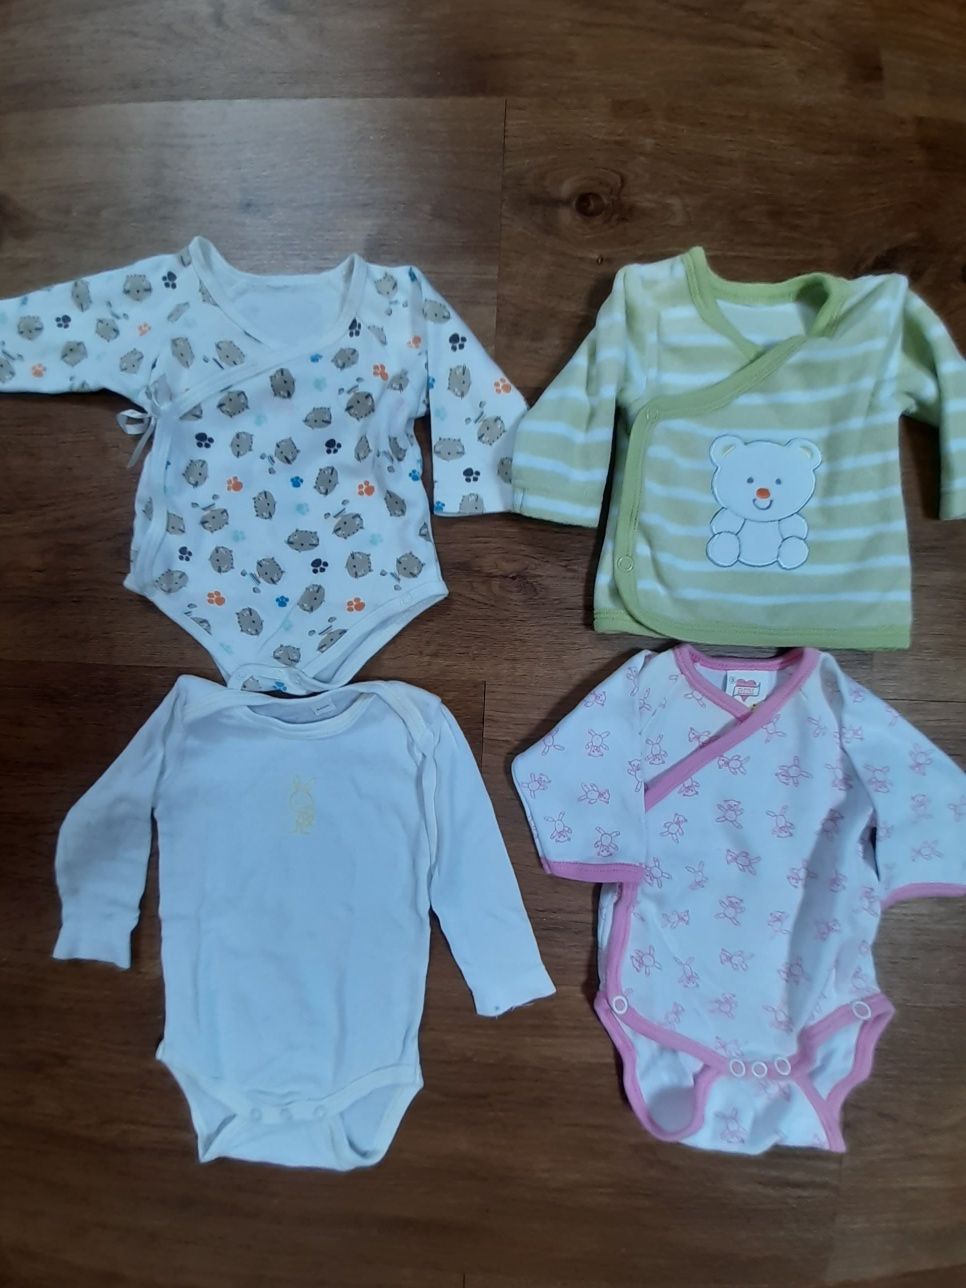 Interiores, pijamas e bodys bebé tamanhos 00, 0 e 1 mês